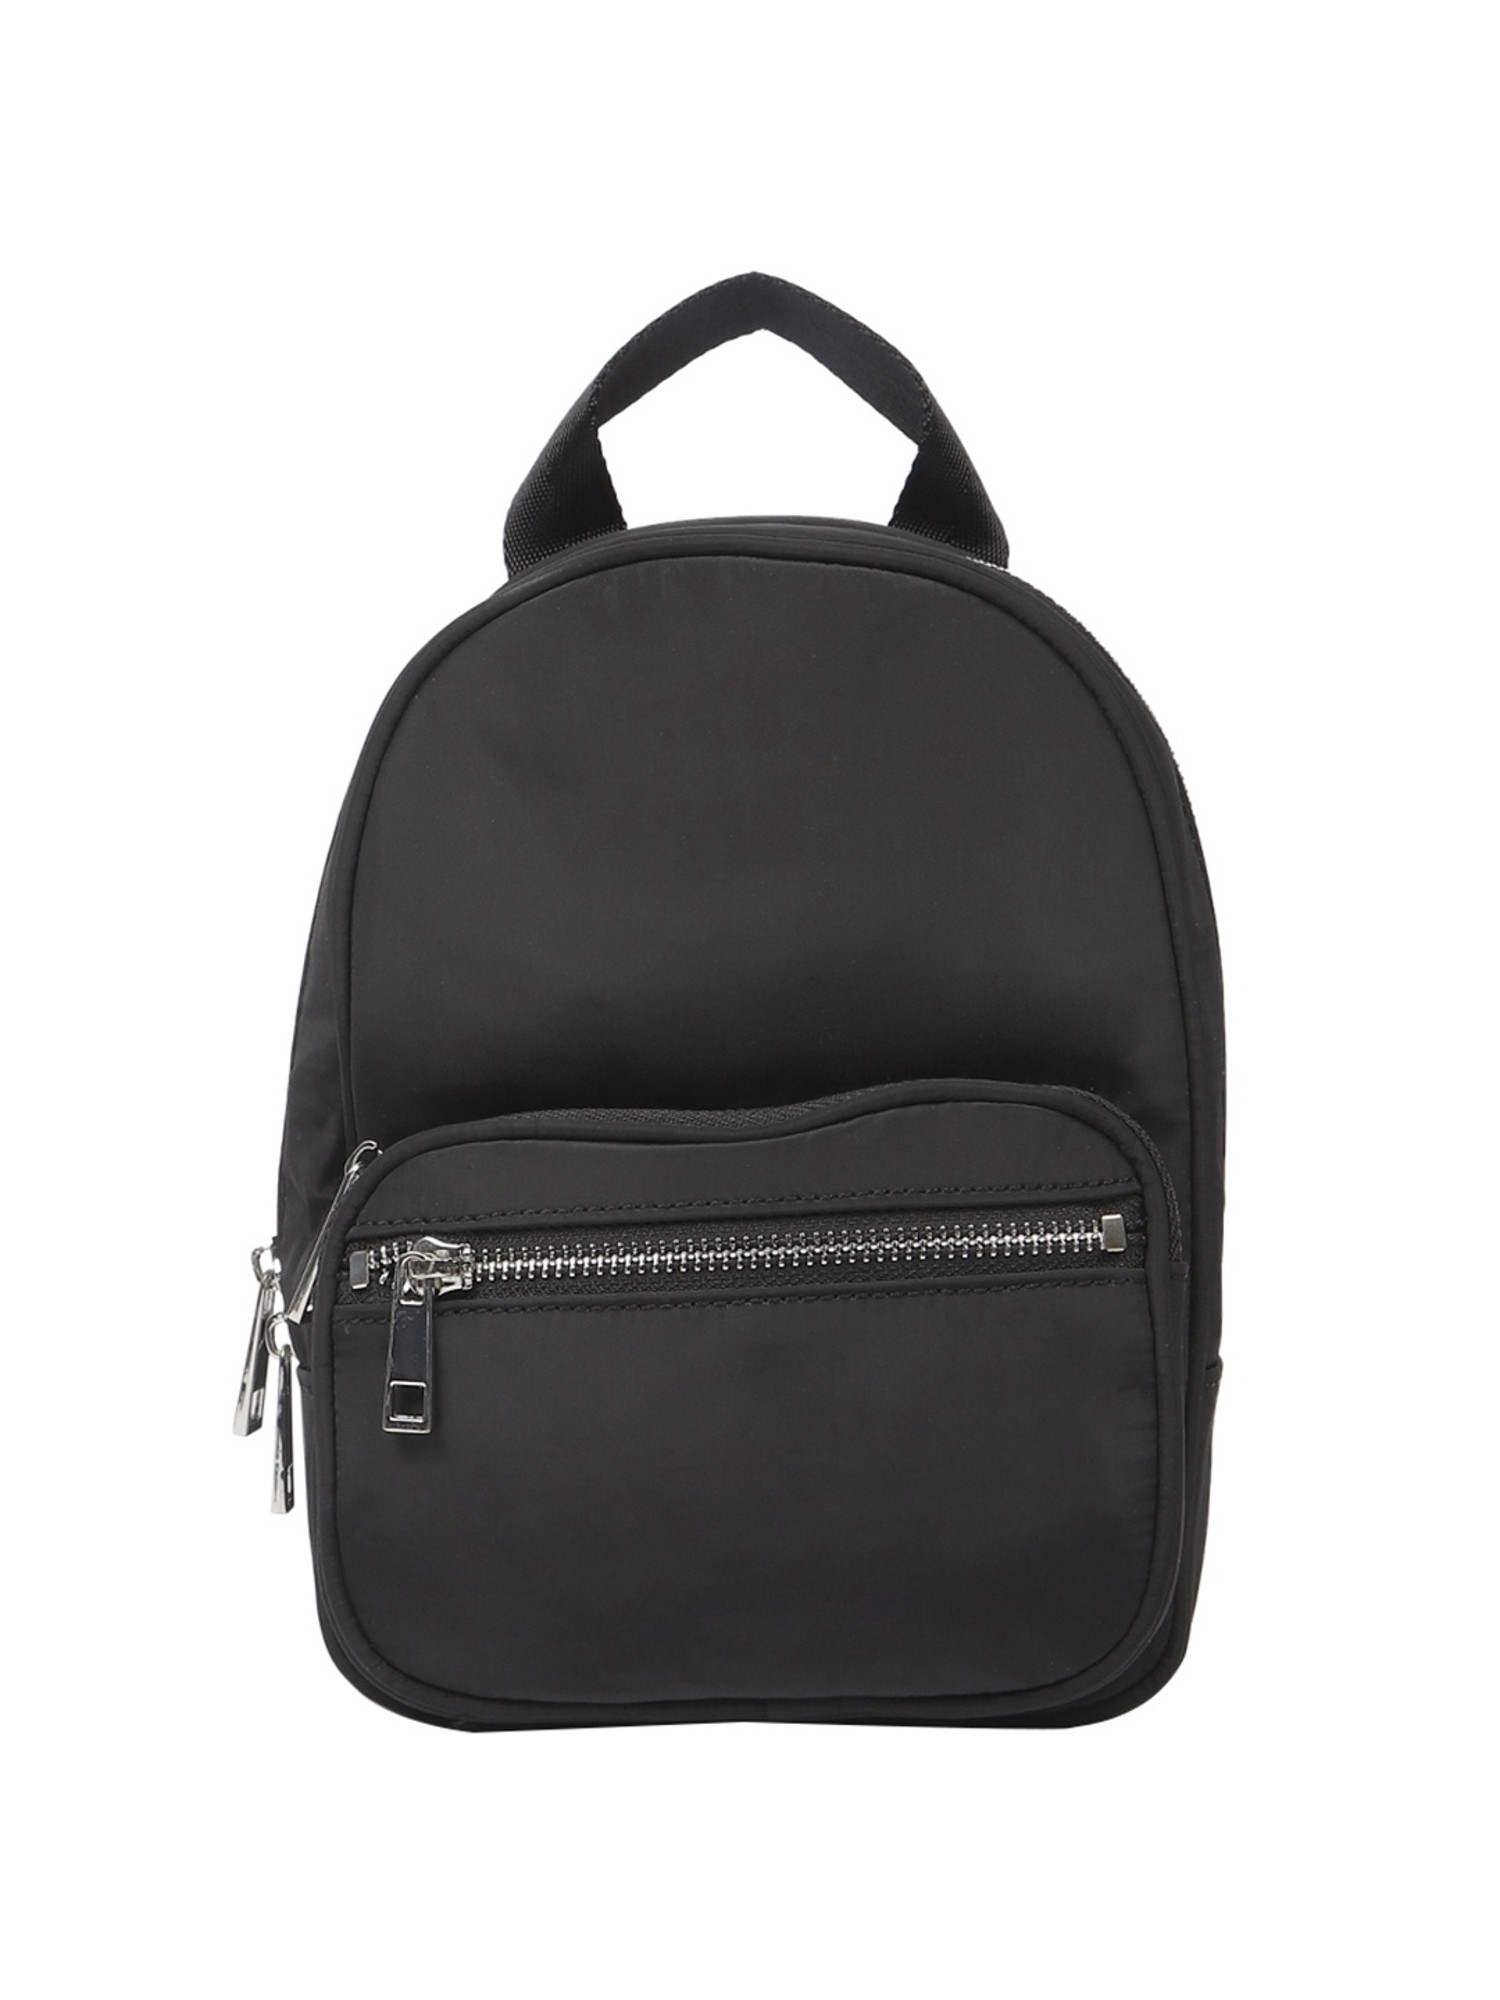 Buy Forever 21 Black Medium Backpack For Women At Best Price  Tata CLiQ